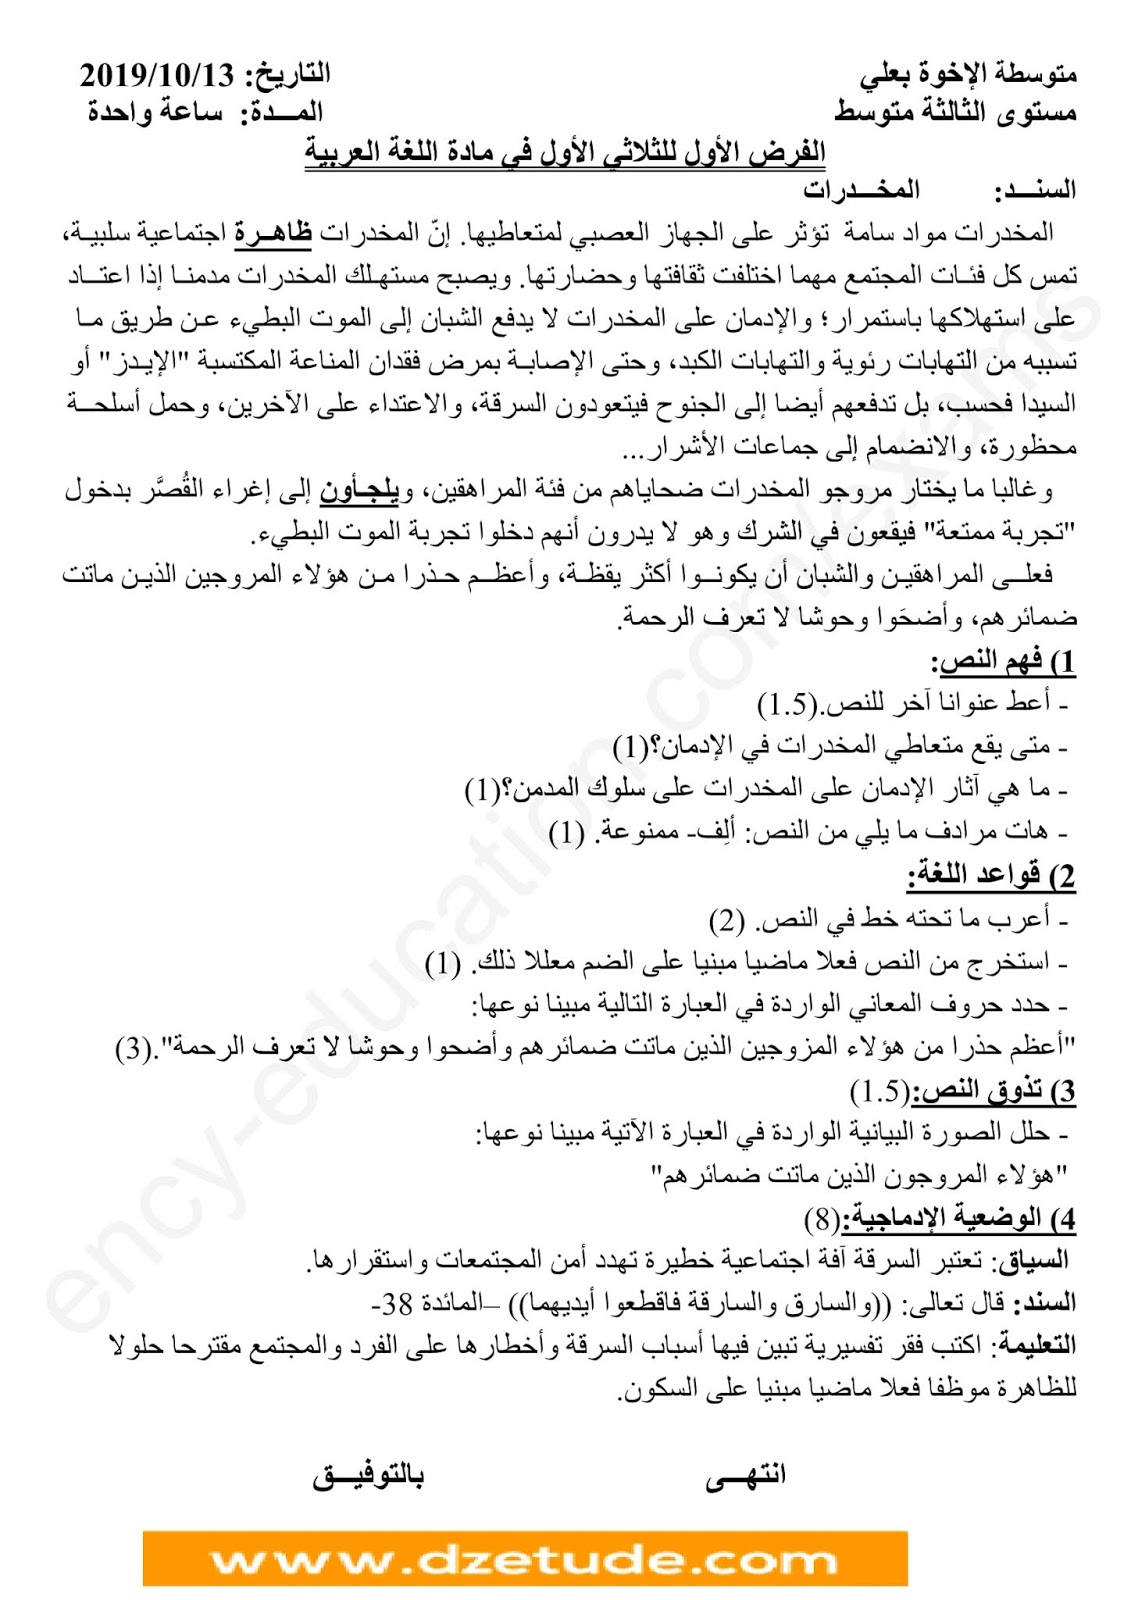 فرض اللغة العربية الفصل الأول للسنة الثالثة متوسط - الجيل الثاني نموذج 6